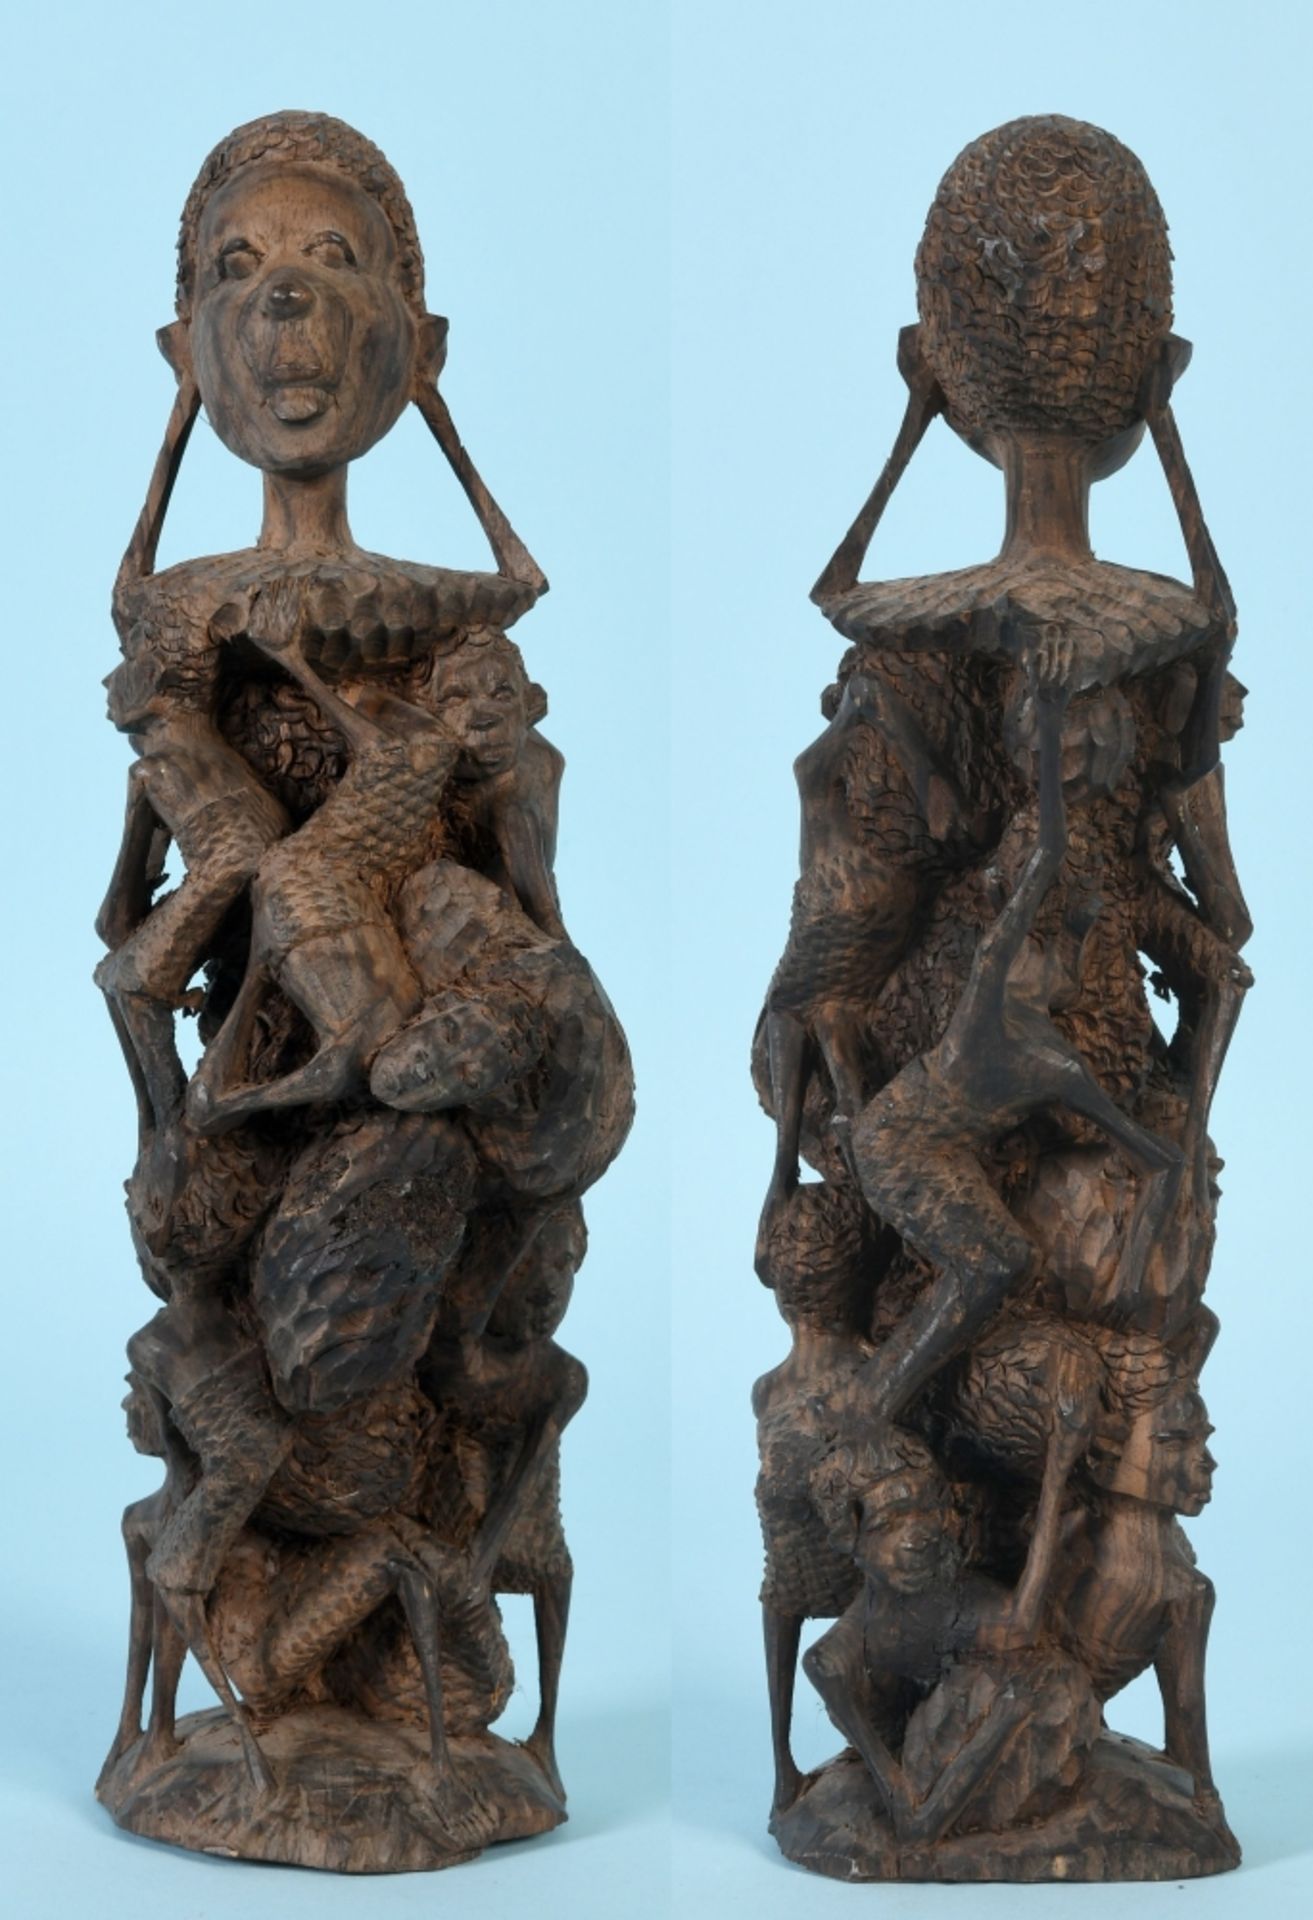 Afrikanische Skulptur - Lebensbaum